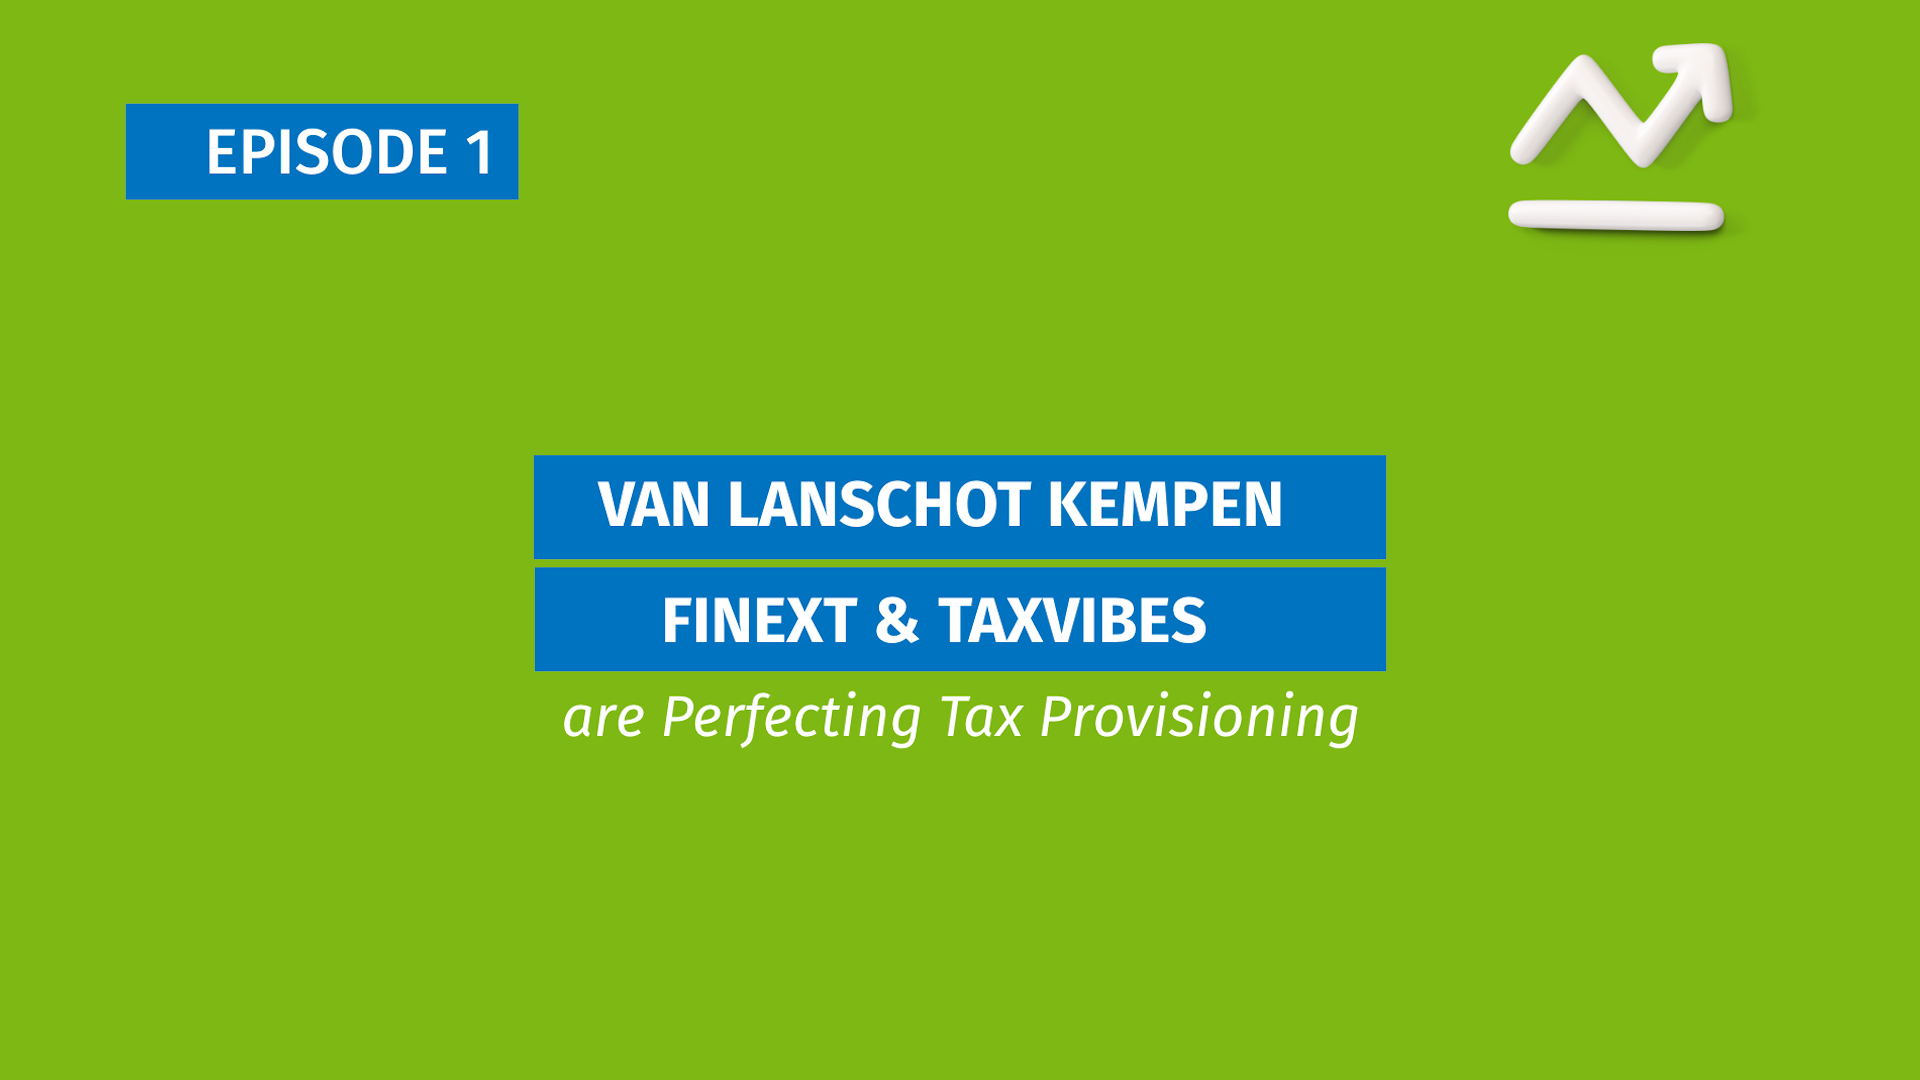 #1 CCH Tagetik - Van Lanschot Kempen & Finext